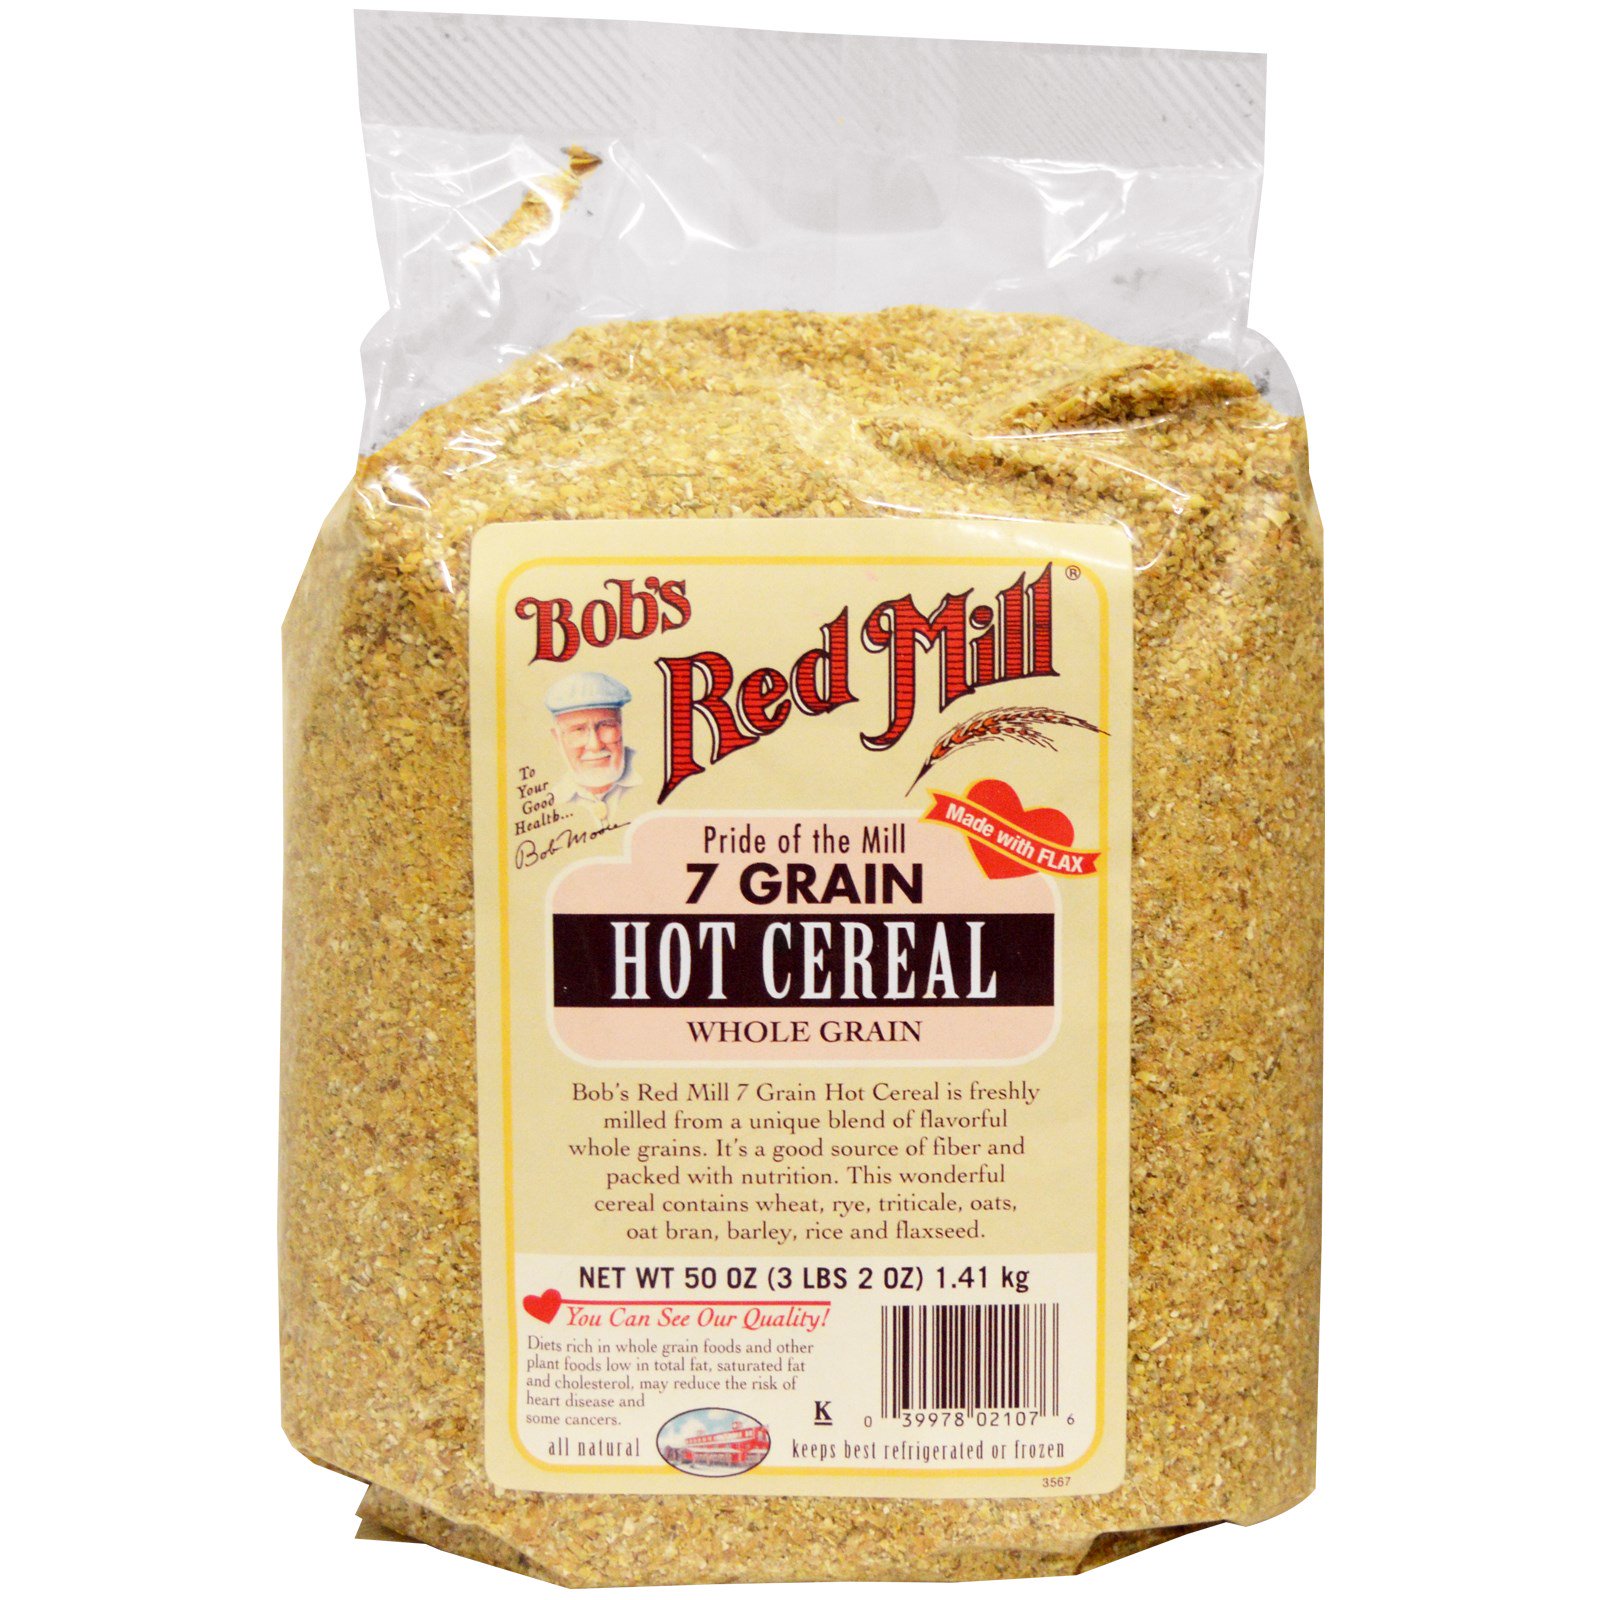 Злаковые смеси. Каша 7 злаков. Боб зерновой. , 7 Grain hot Cereal from Bob's Mill). Bobs Red Mill.